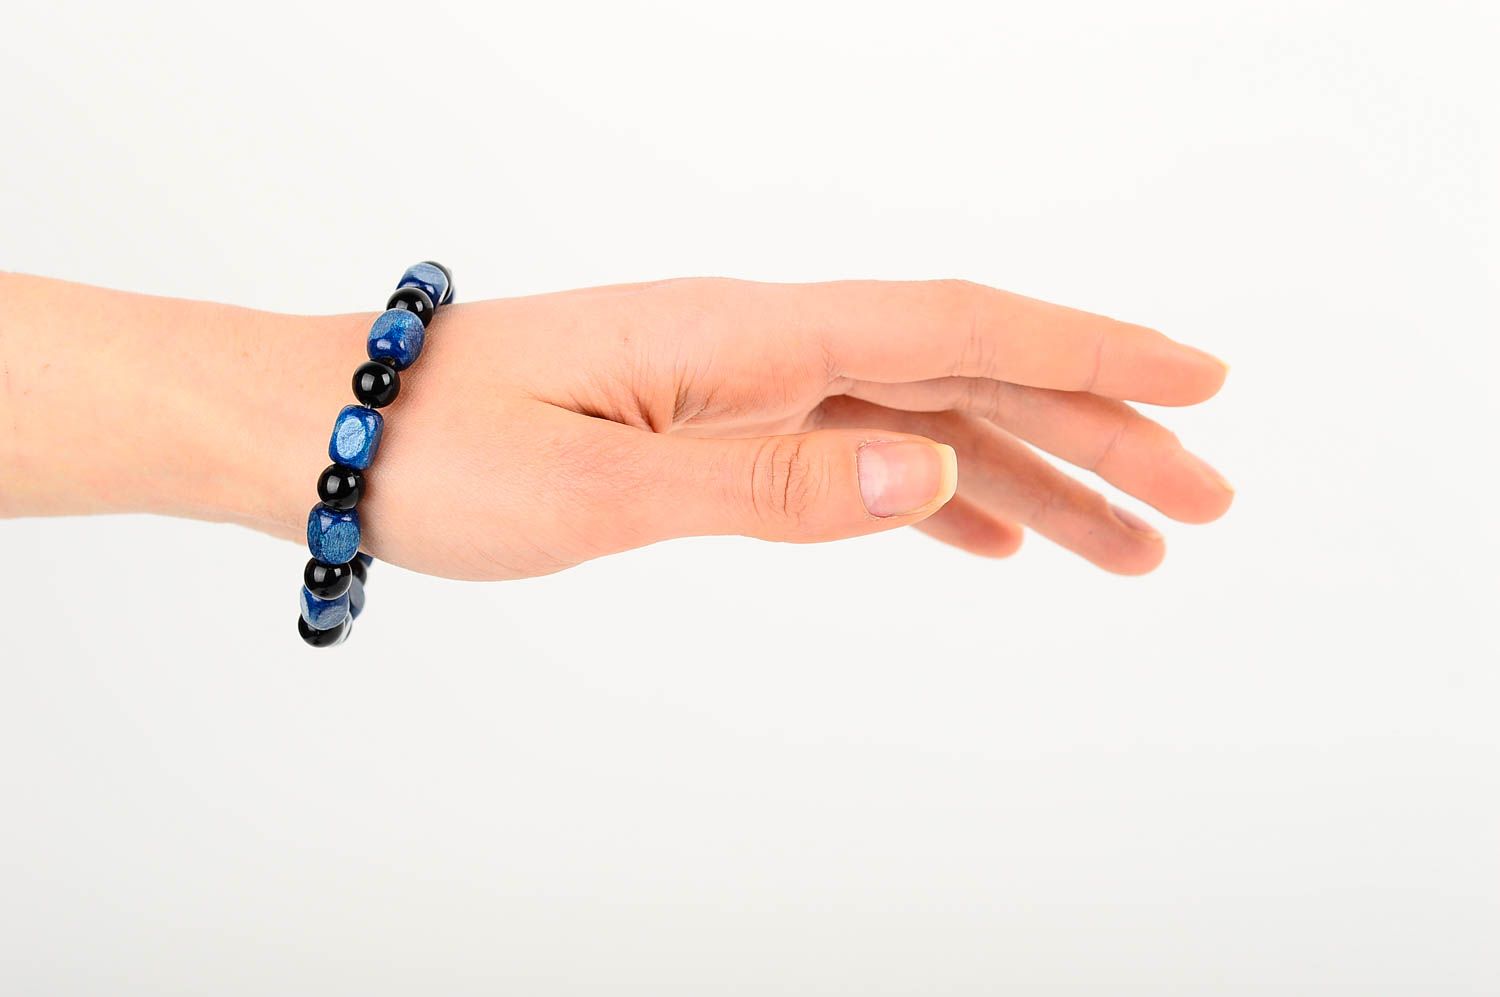 Armschmuck Damen Handmade Armband Schmuck aus Holz schönes Armband blau schwarz foto 2